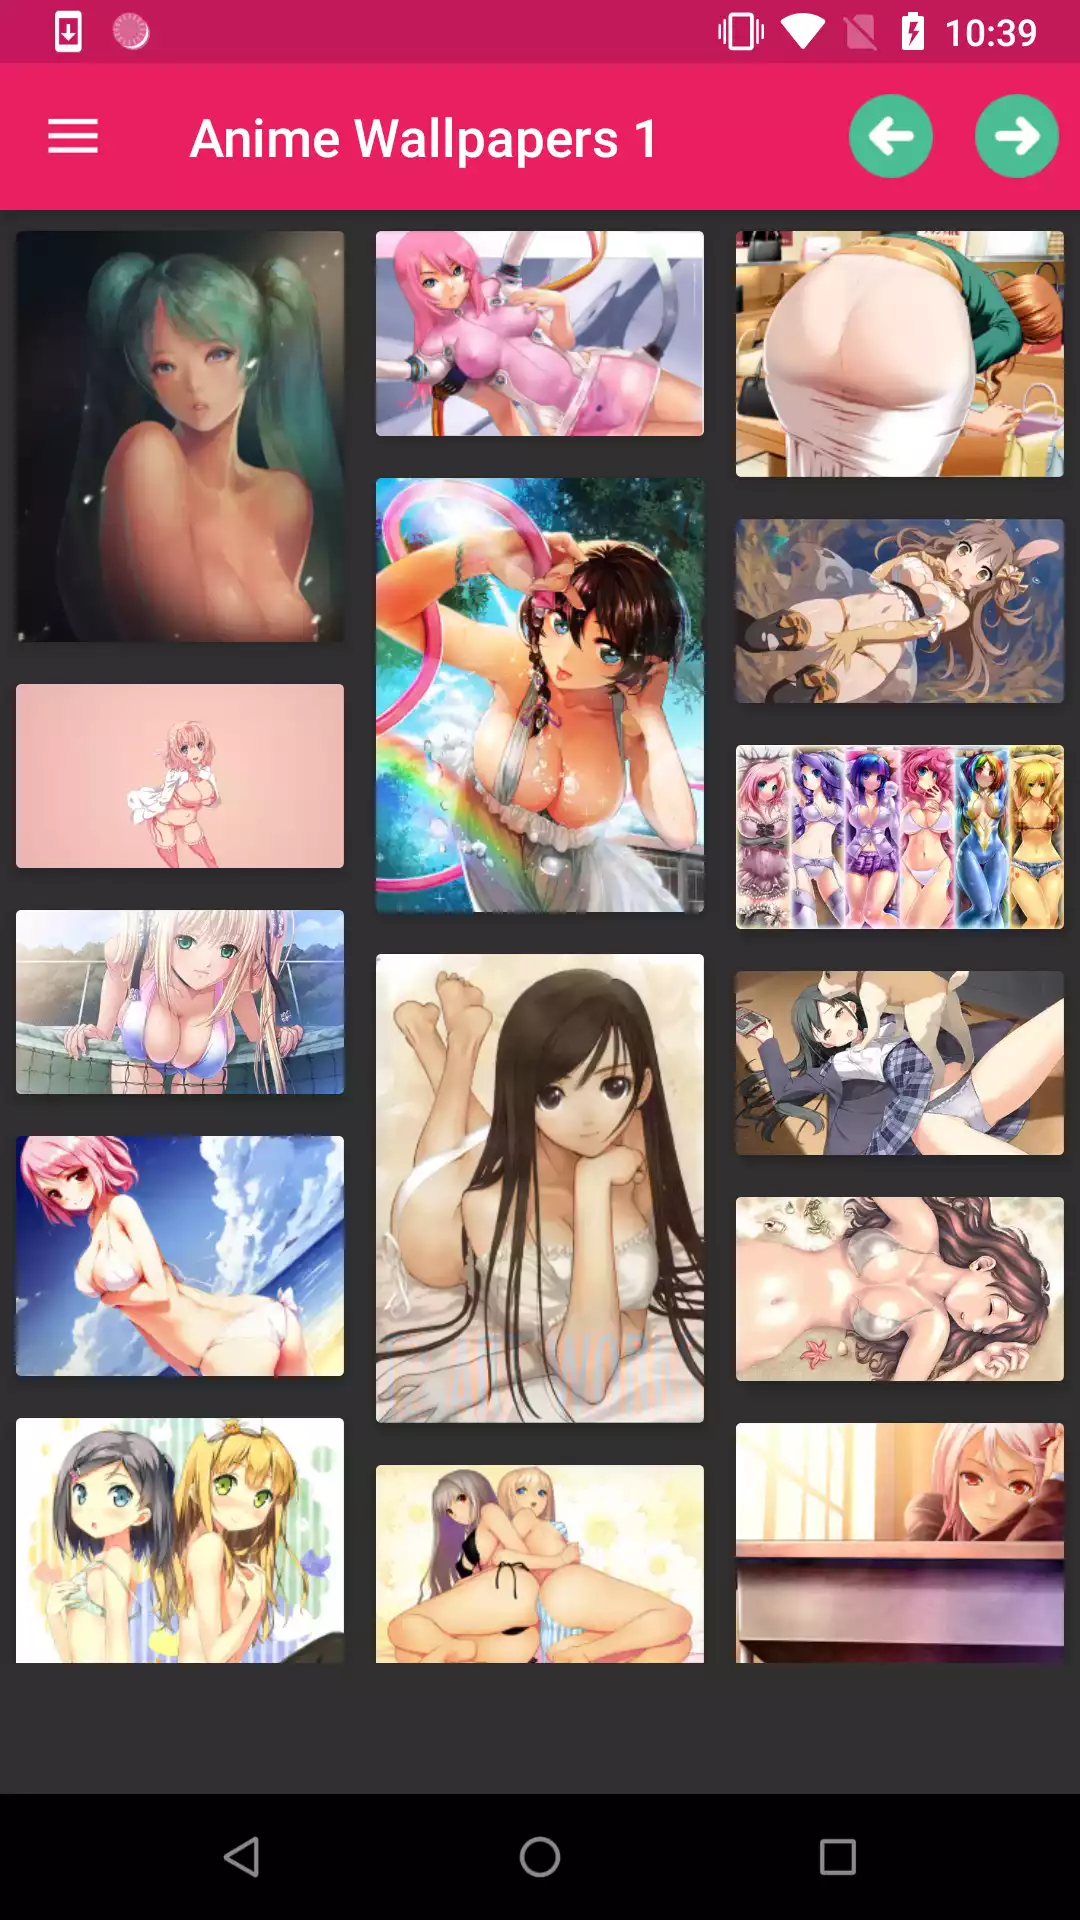 Anime porn apps